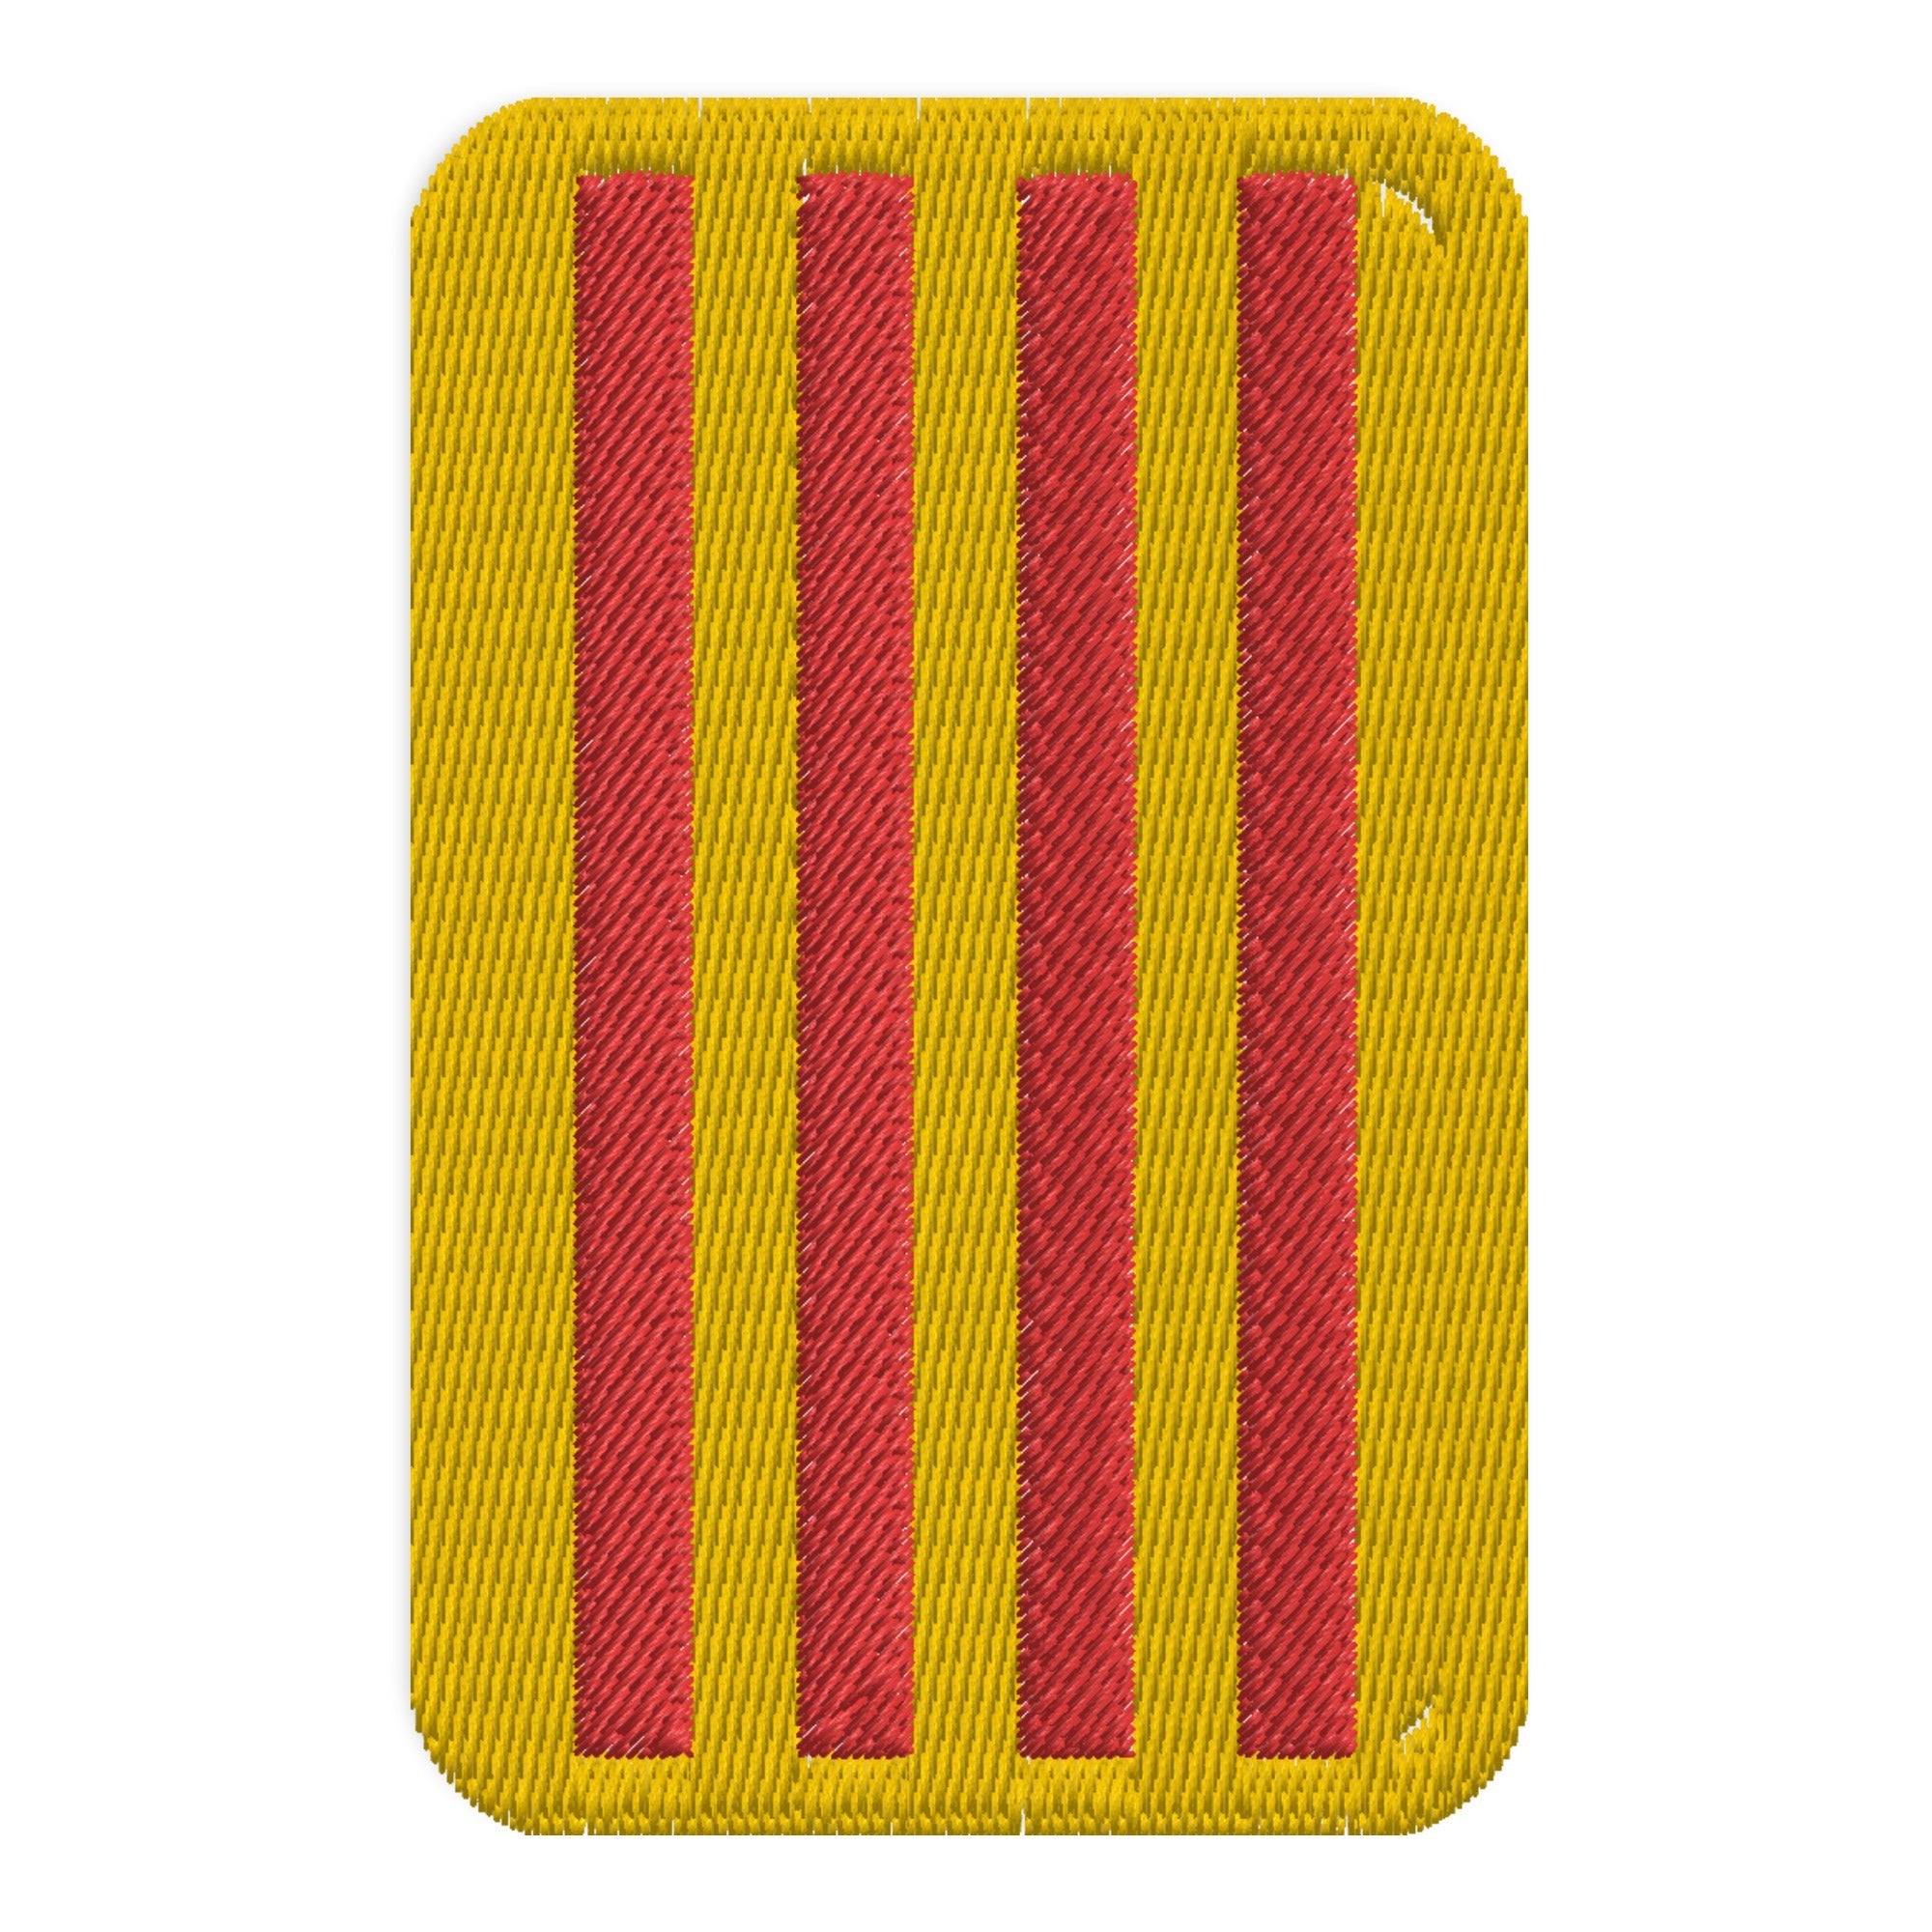 Bandeira heráldica com patches bordados